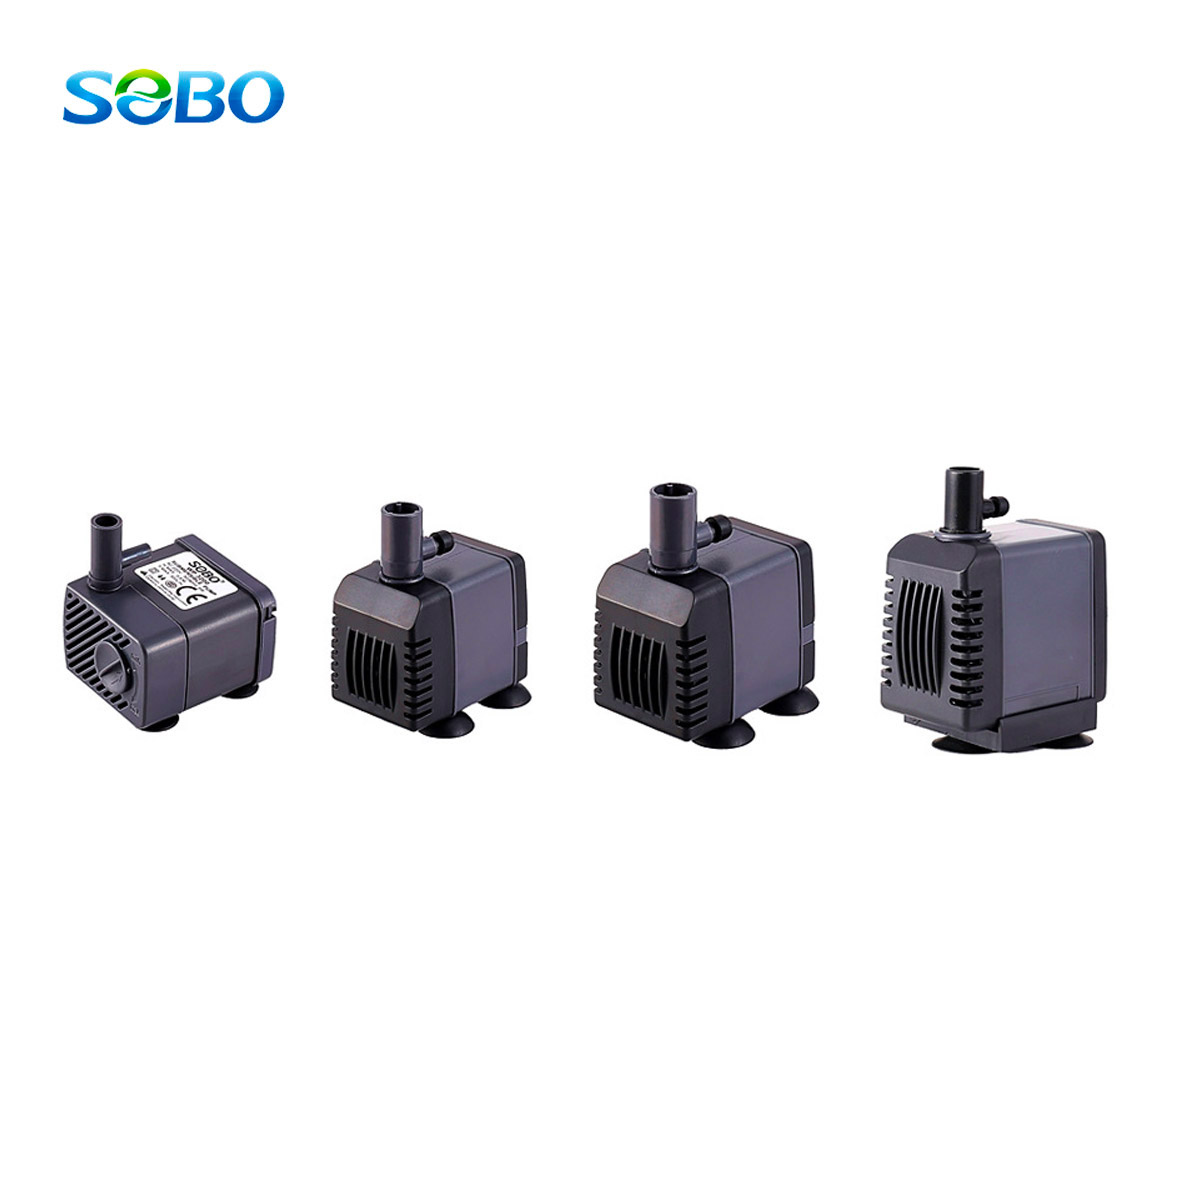 SOBO Water Pump ปั๊มน้ำขนาดเล็ก ราคาเบา ใช้งานได้ทุกรูปแบบ มีหัวแปลงให้เหมาะสมกับสายยางทุกขนาด แรงดัน 300-1200L/h